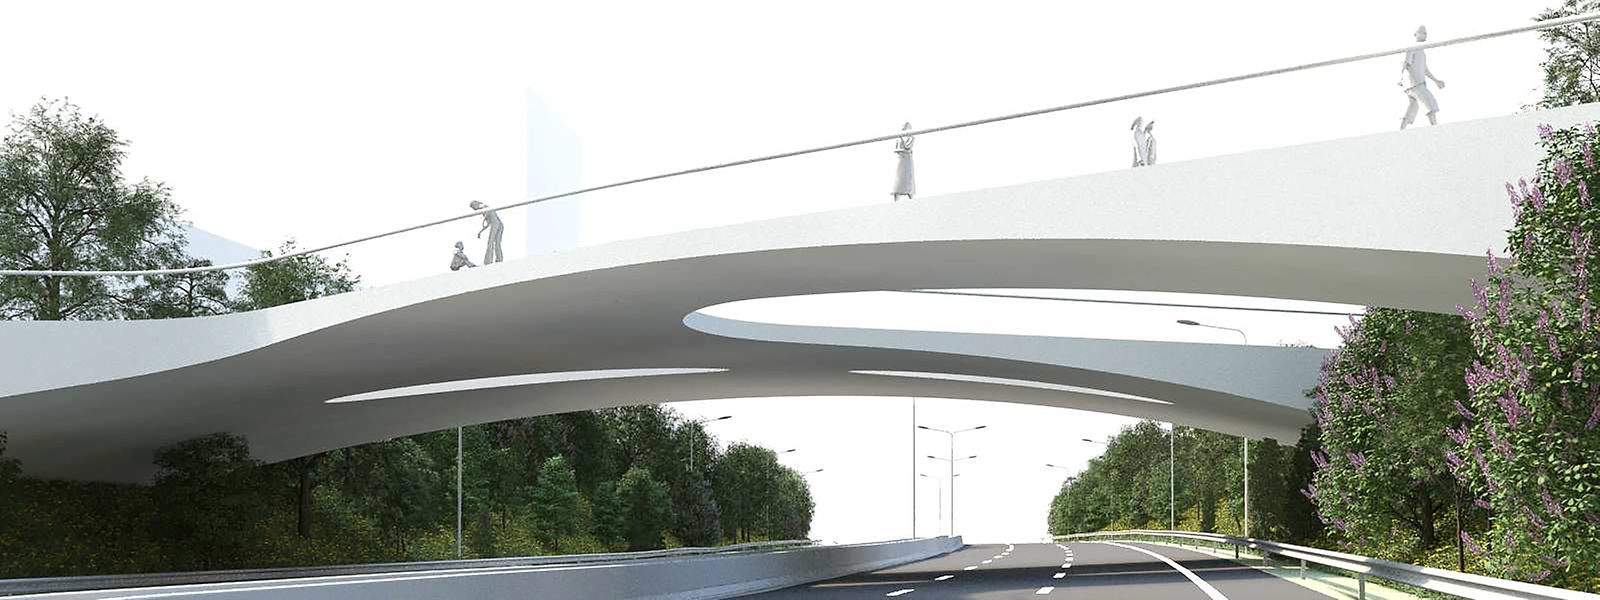 Über diese Brücke sollen künftig die Tram, Busse, Radfahrer und Fußgänger von Howald zum Ban de Gasperich kommen.  